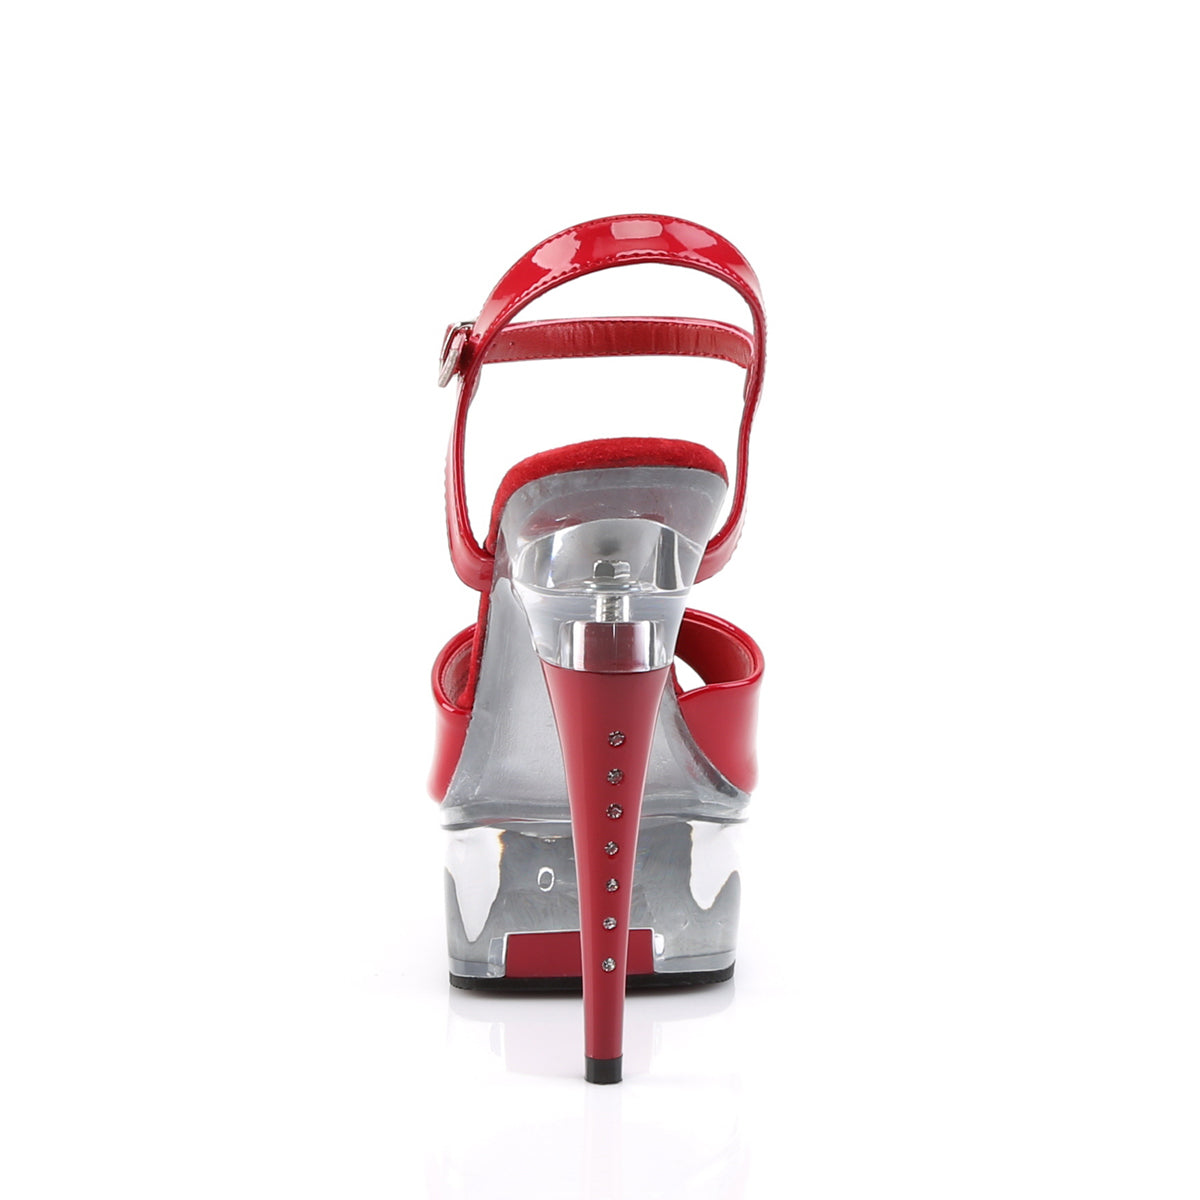 CAPTIVA-609 Red Patent/Clear Platform Sandal Pleaser